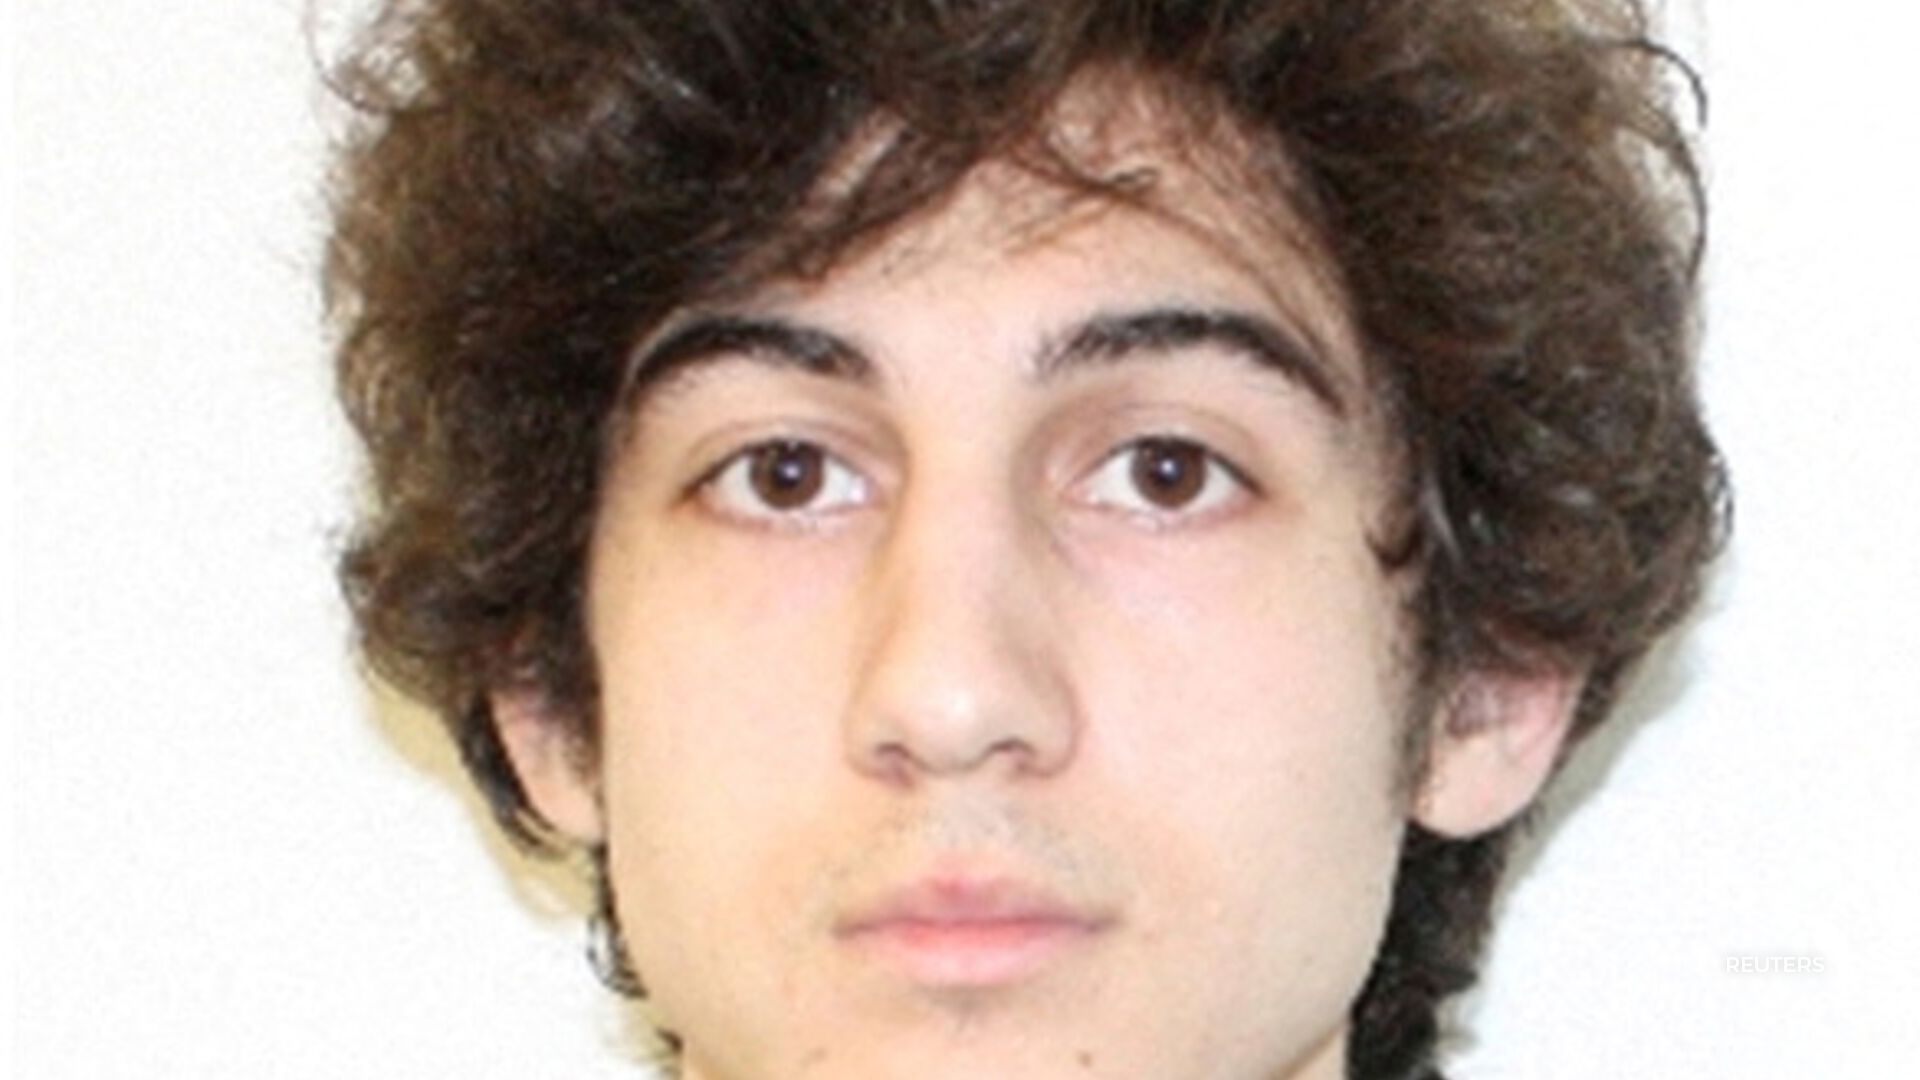 The death sentence for Boston Marathon bomber Dzhokhar Tsarnaev was reinstated.